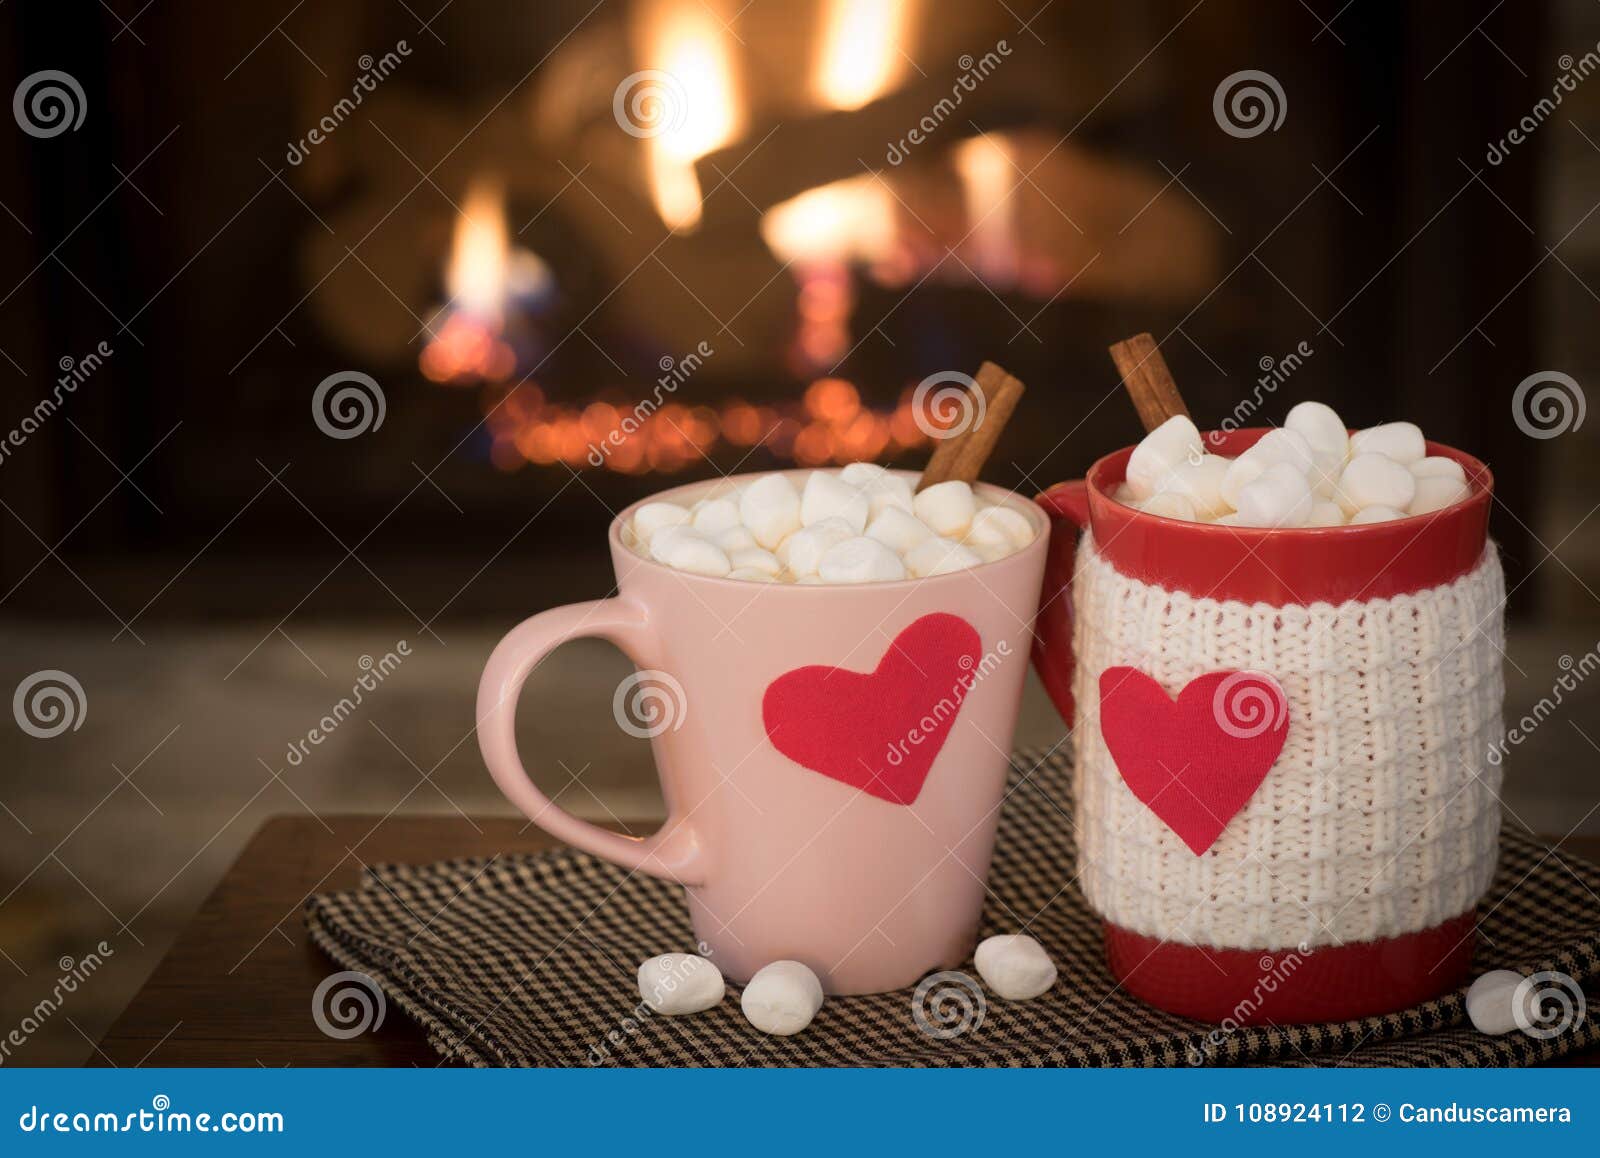 Rustic Campfire Coffee Mug Warm & Cozy